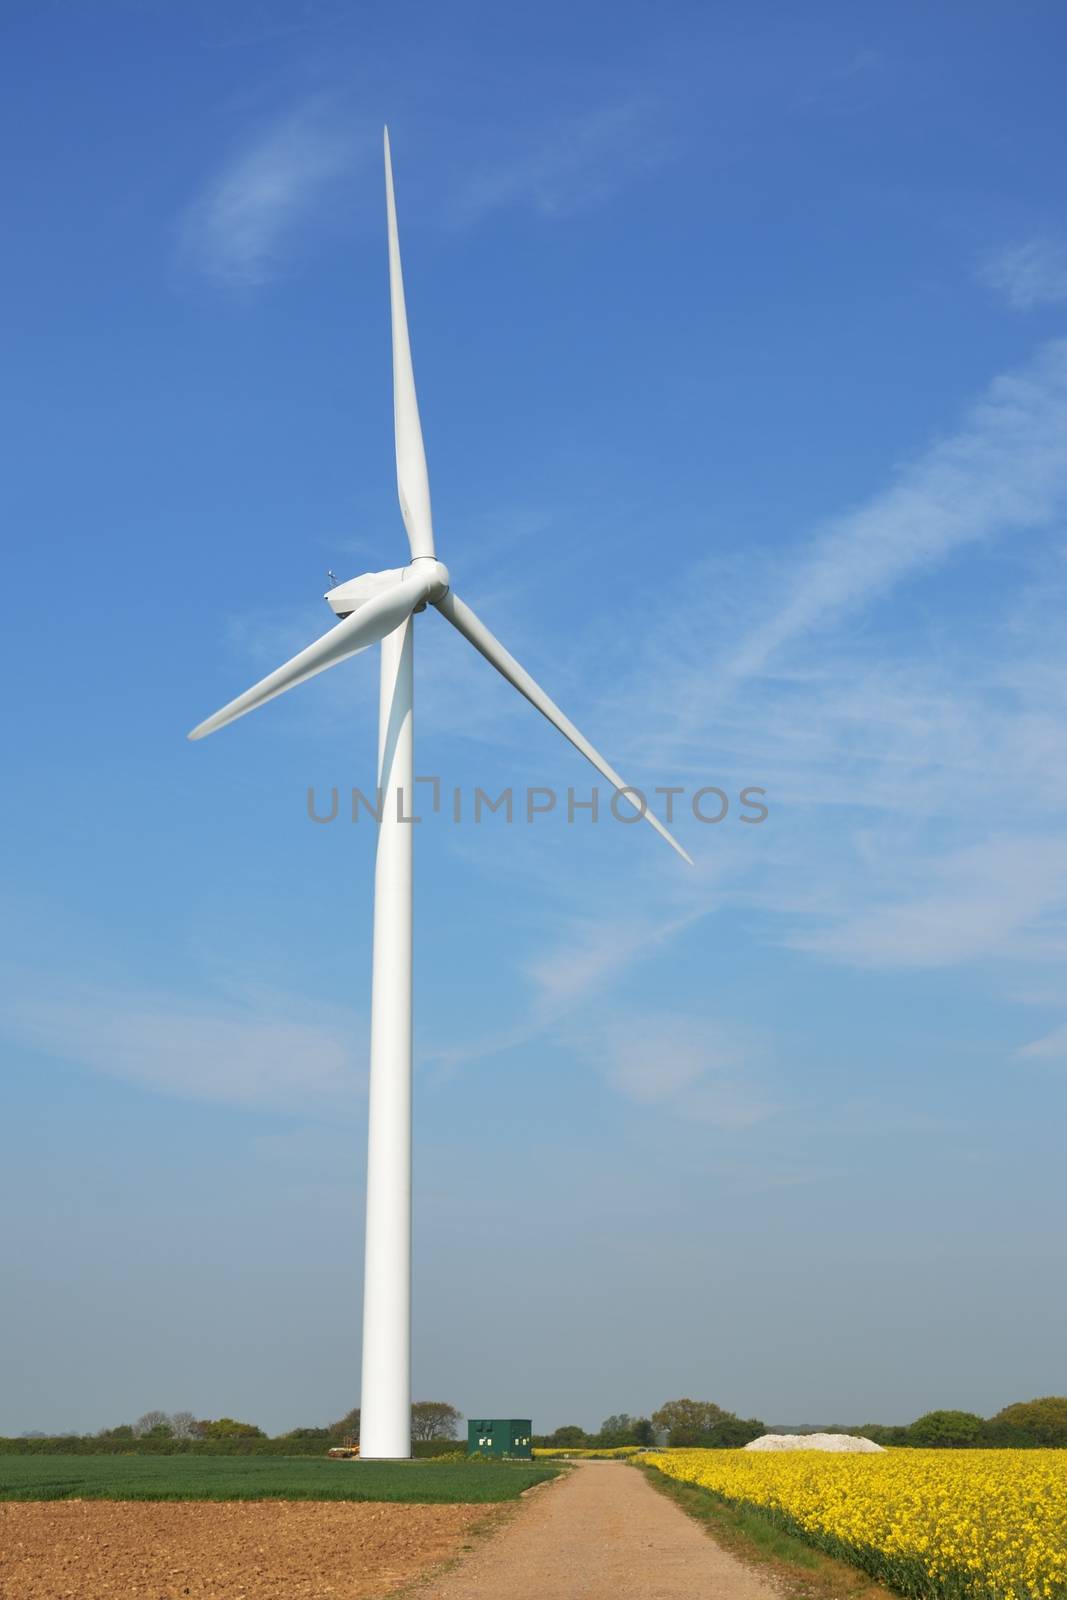 wind turbine in field by pauws99